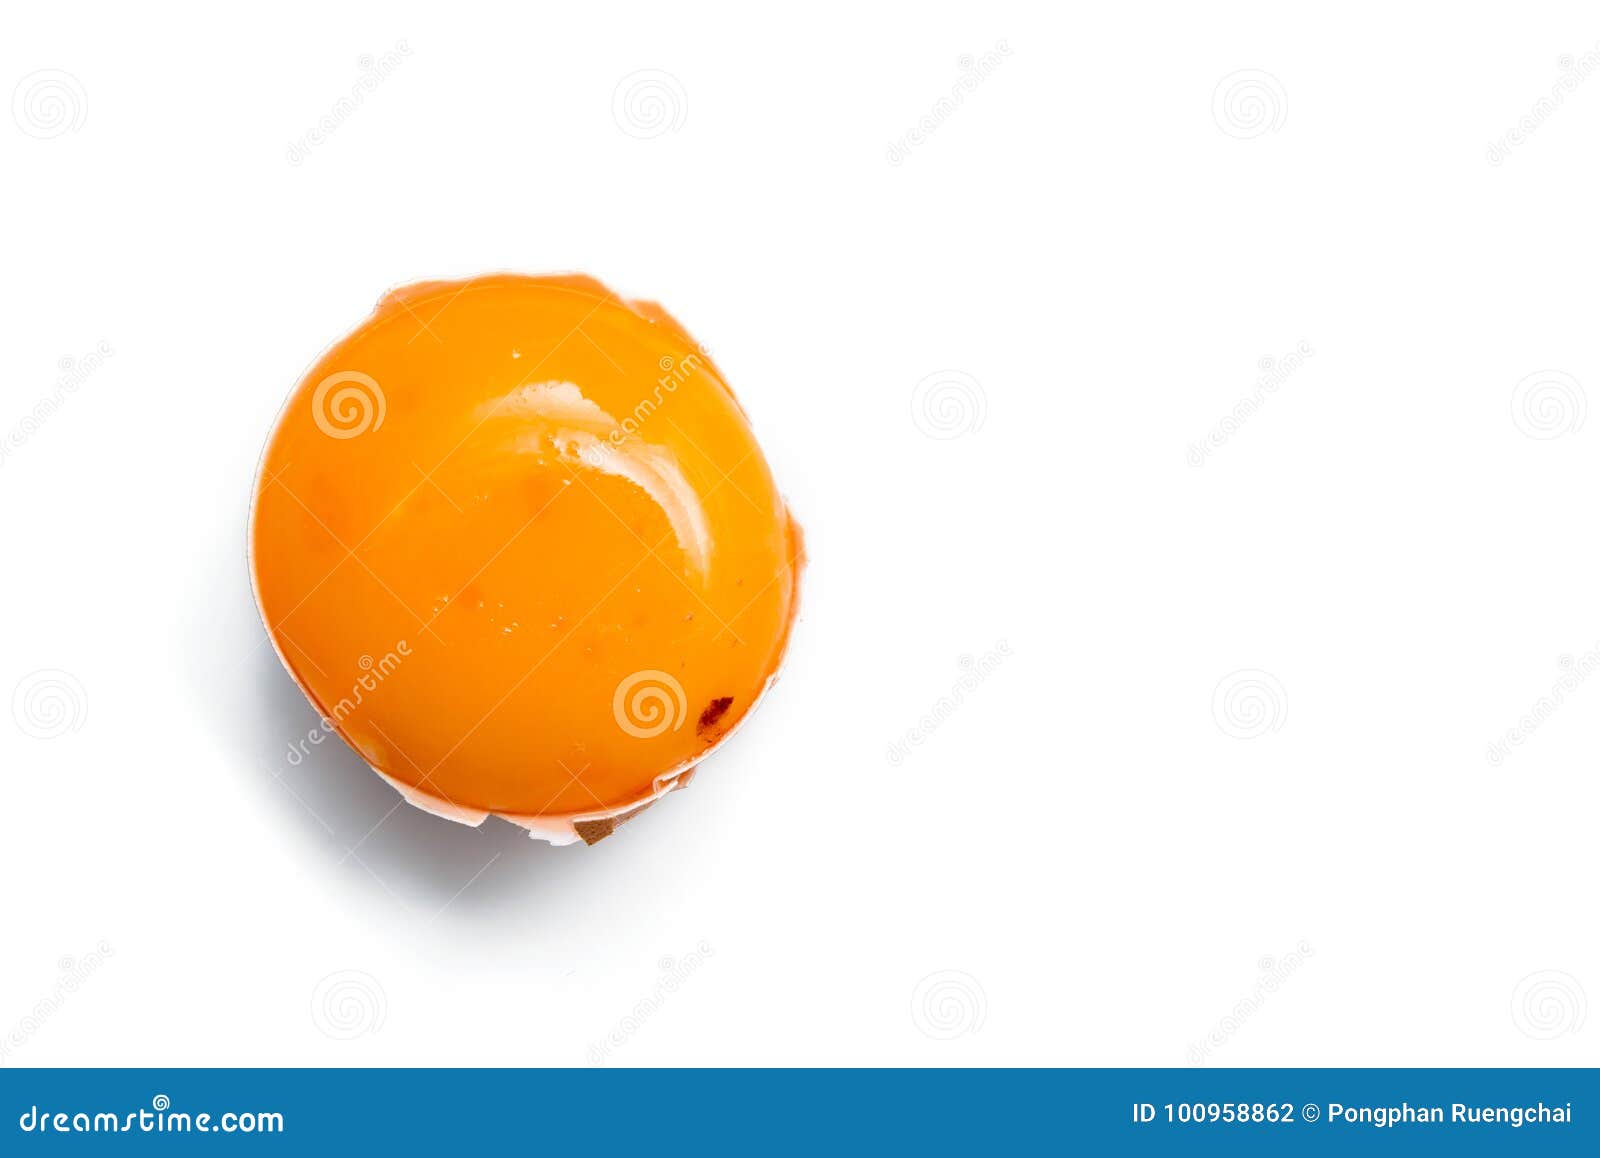 egg yolk in egg shell